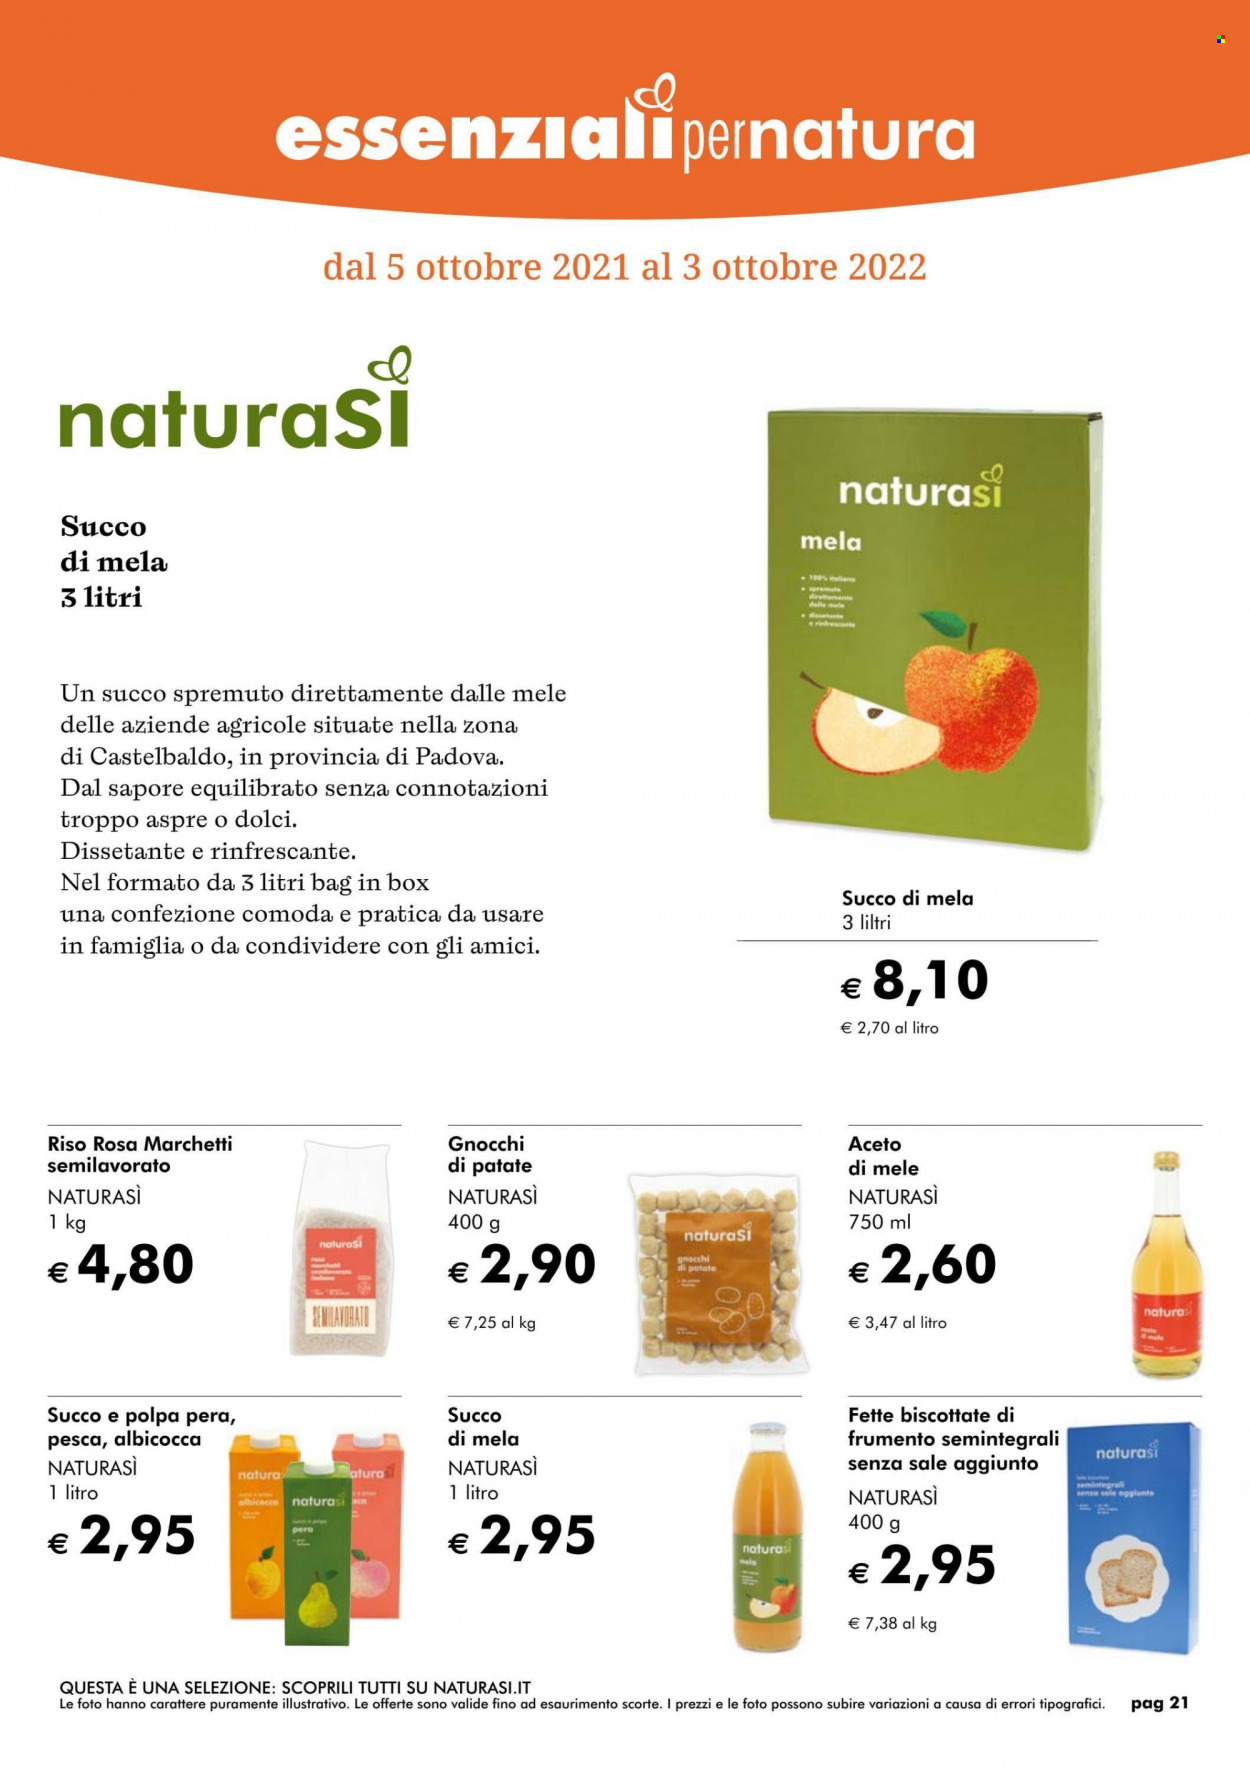 thumbnail - Volantino Natura Sì - Prodotti in offerta - fette biscottate, gnocchi, riso, aceto, aceto di mele, succo. Pagina 21.